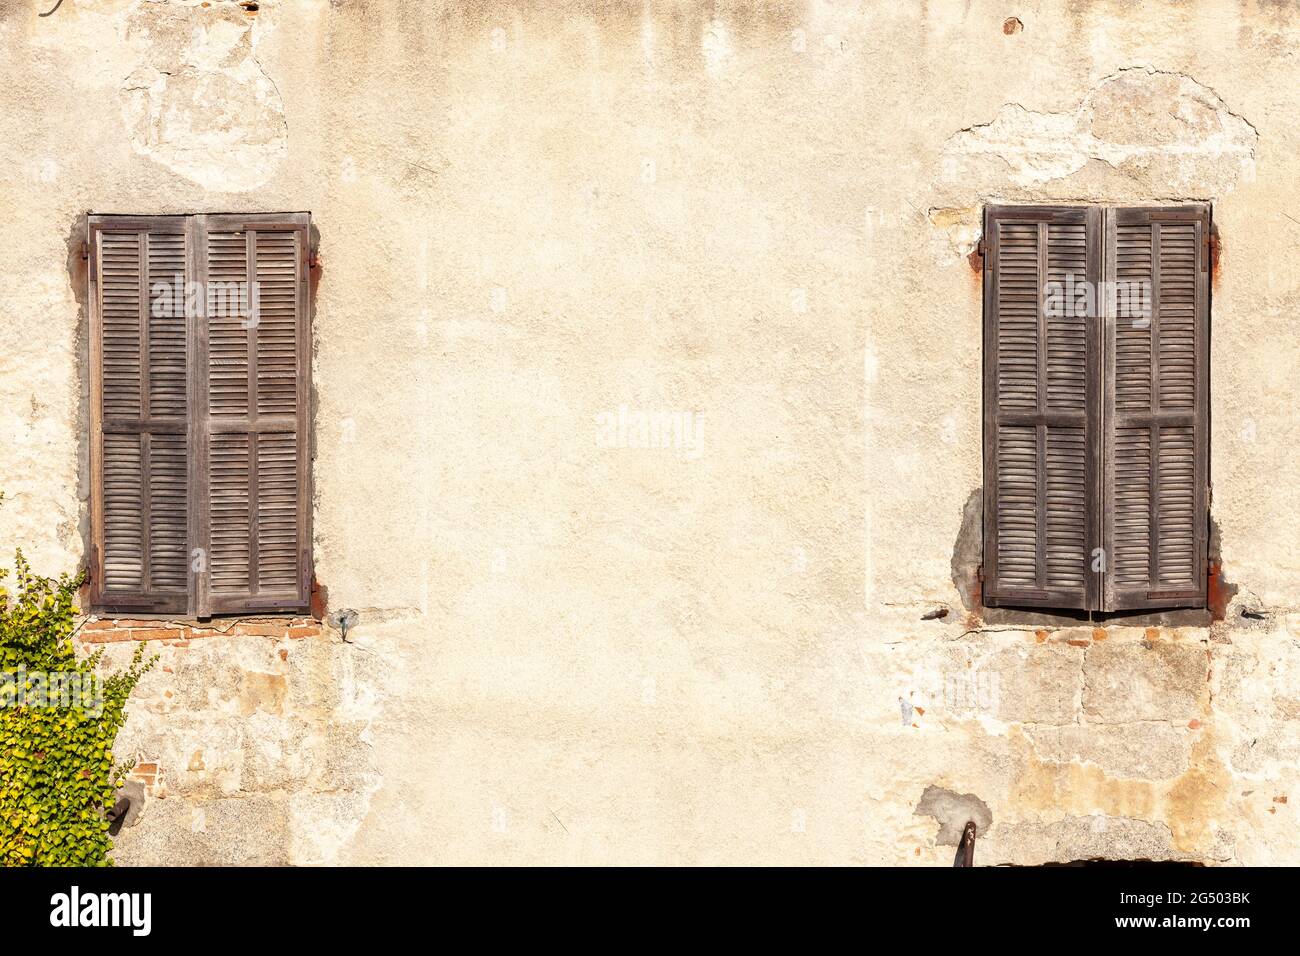 Due finestre con persiane in legno chiuse. Parete gialla. Sartène, Corsica, Francia Foto Stock